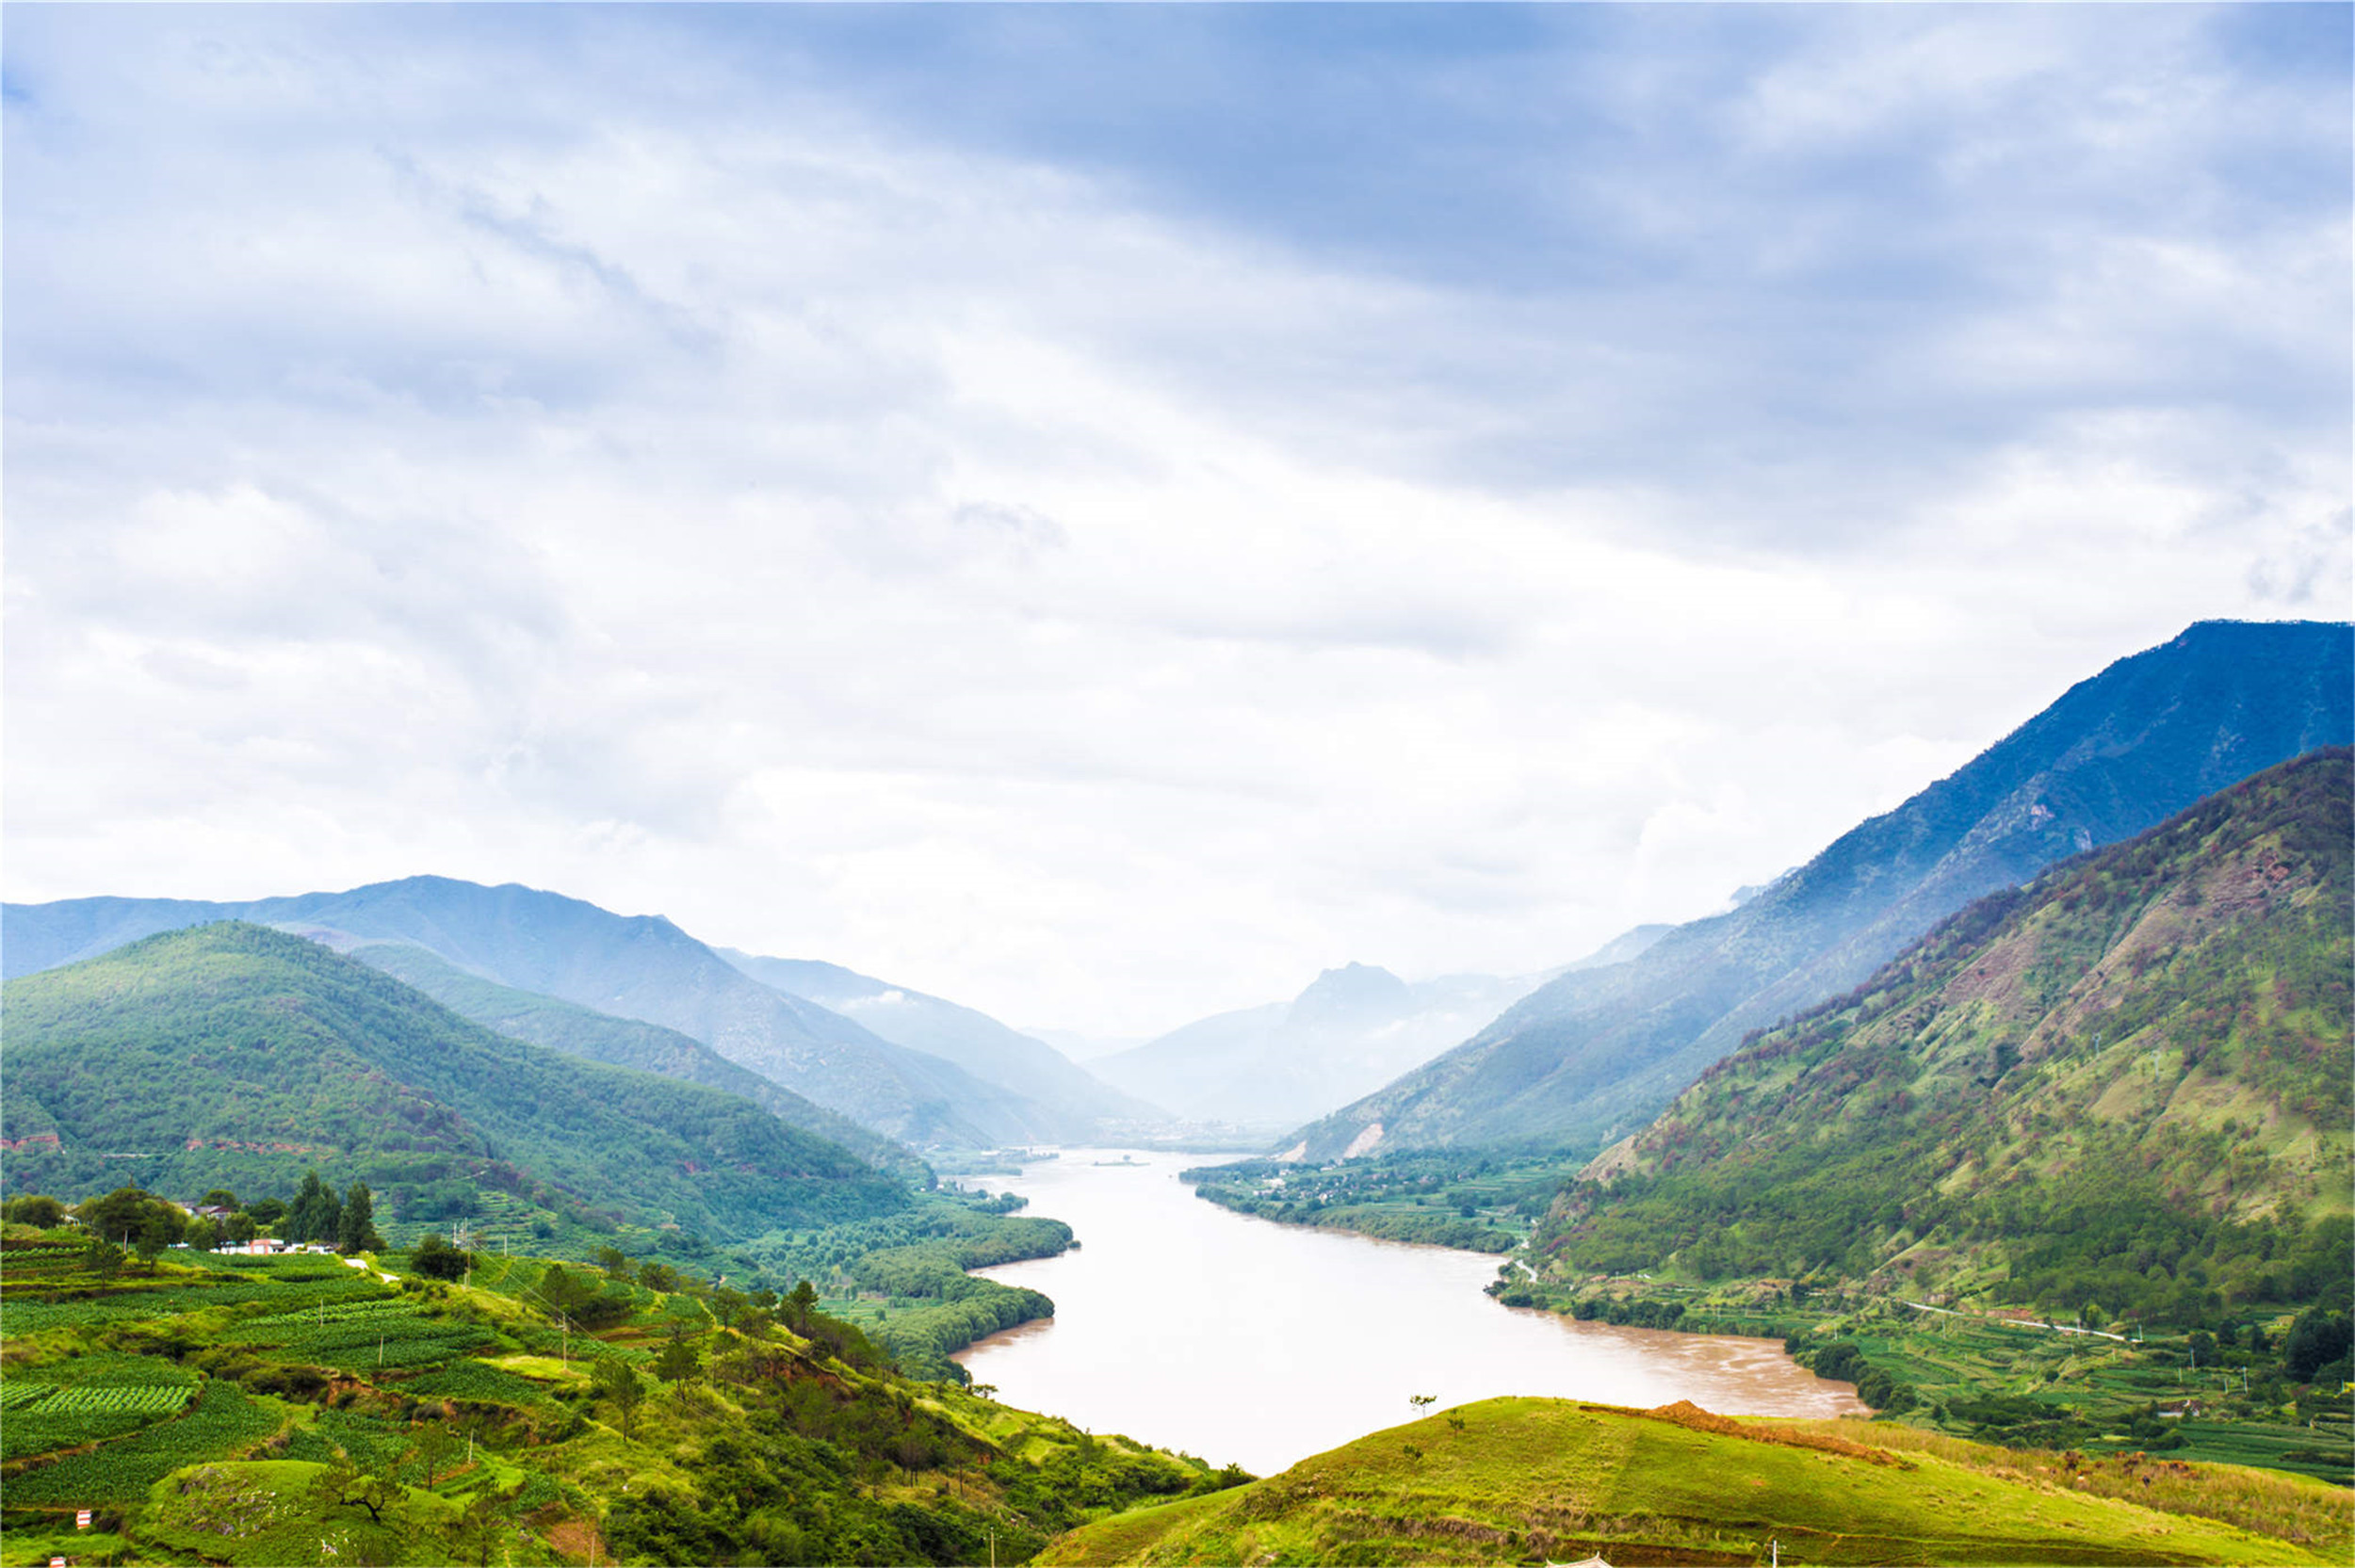 今日介绍六张山川风景图:让人流连忘返的自然风景,美到窒息